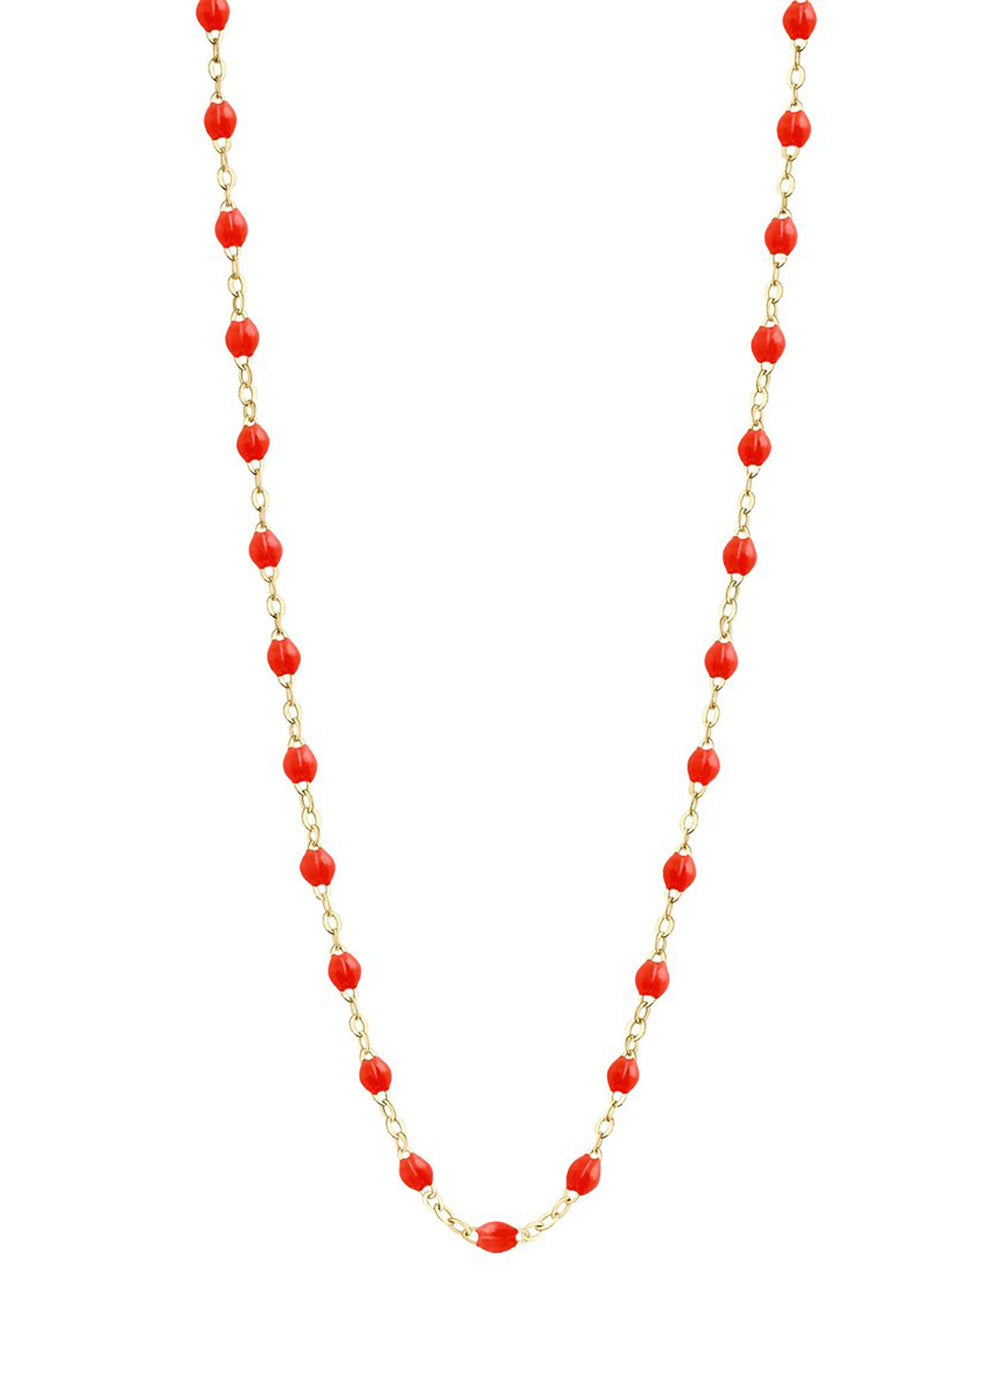 gigiCLOZEAU Jewlery - classic gigi necklace New Coral |18k gold